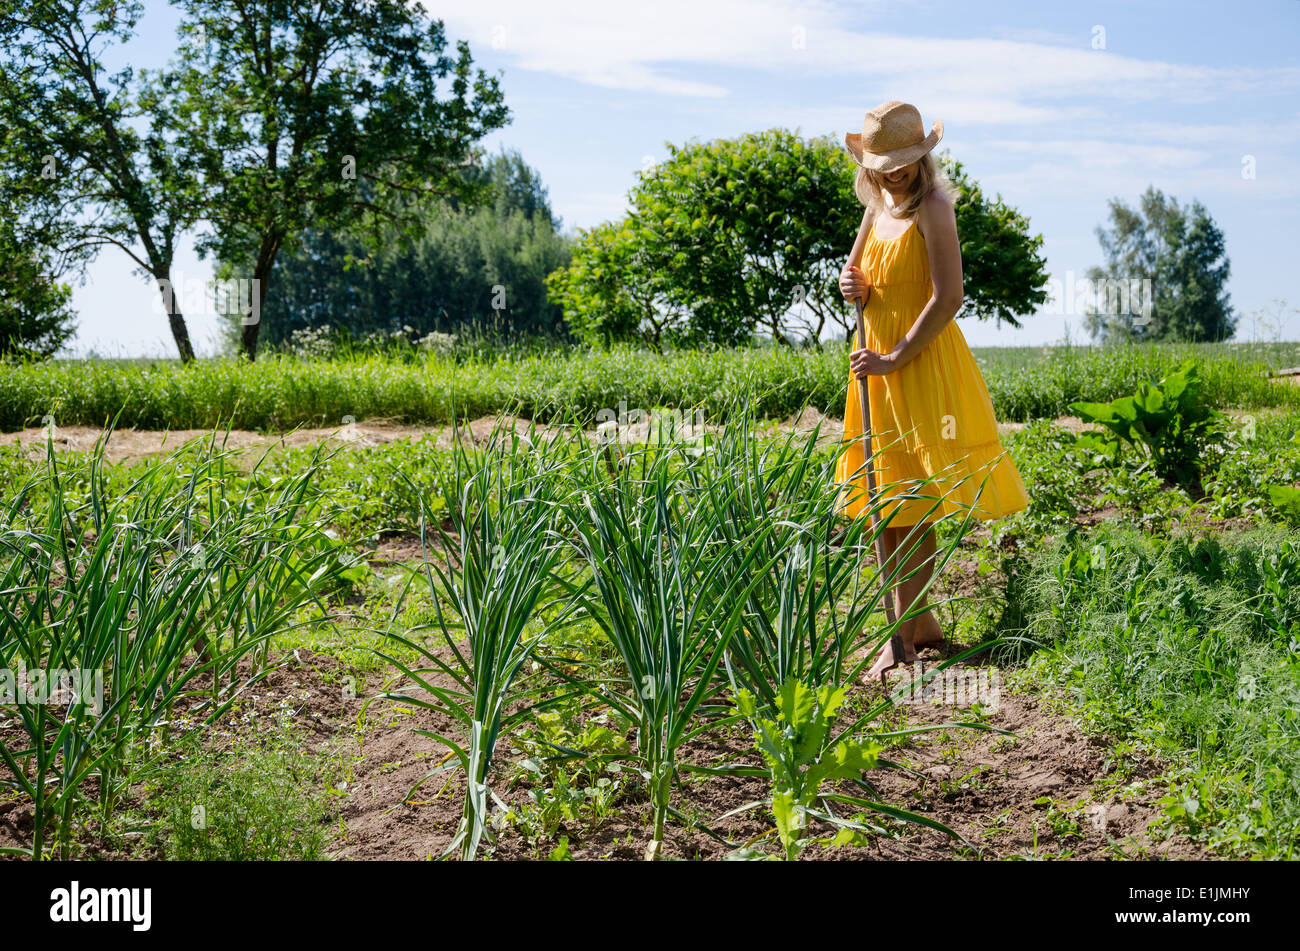 A piedi nudi giardiniere donna ragazza in abito e hat lavorare in giardino con la zappa tra Aglio e piante di pisello. Foto Stock